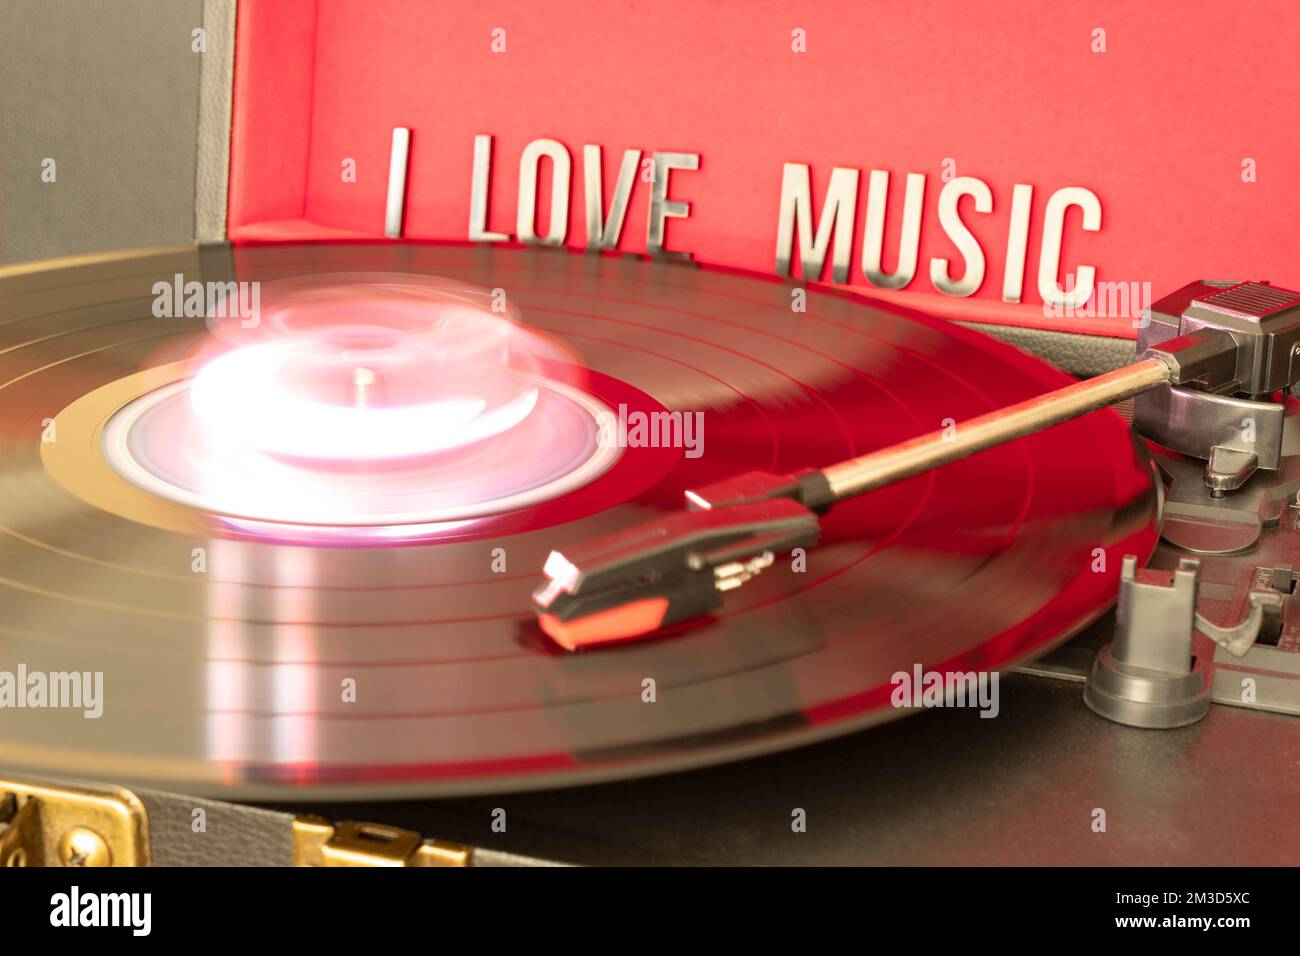 Nahaufnahme einer Drehtischkanüle, die eine LP-Vinyl-Disc mit Drehtisch spielt, und ich liebe die Beschriftung auf rotem Hintergrund. Konzept für Musikliebhaber. Stockfoto